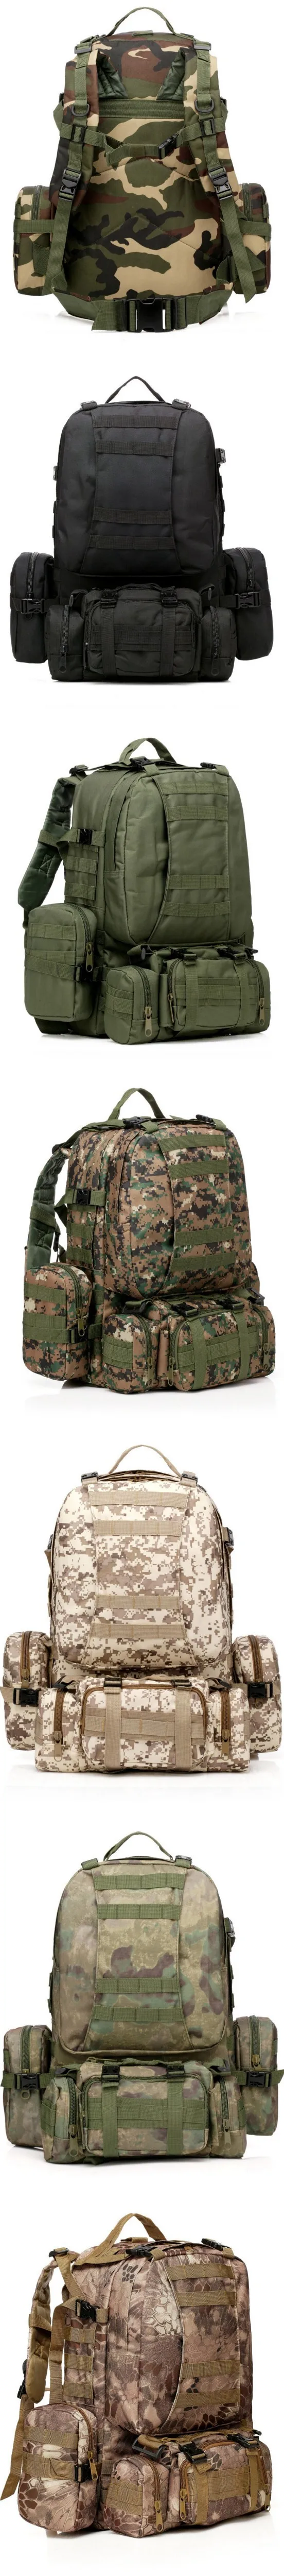 Chuwanglin Новинка 50л Большая вместительная сумка военные рюкзаки рюкзак, нейлоновая сумка 12 цветов дорожные сумки QG7111